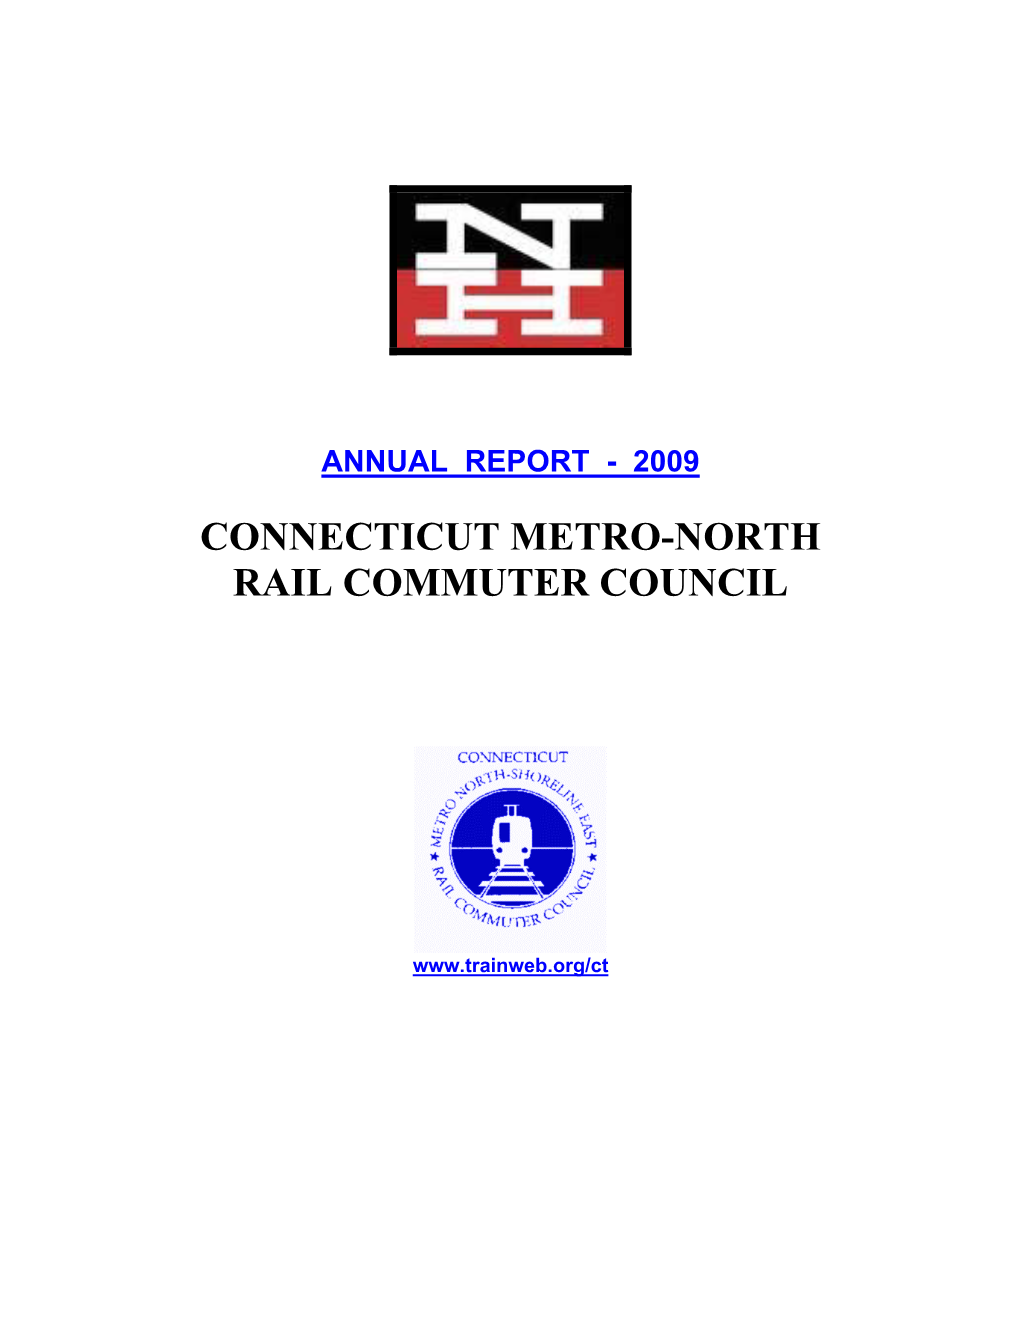 Connecticut Metro-North Rail Commuter Council